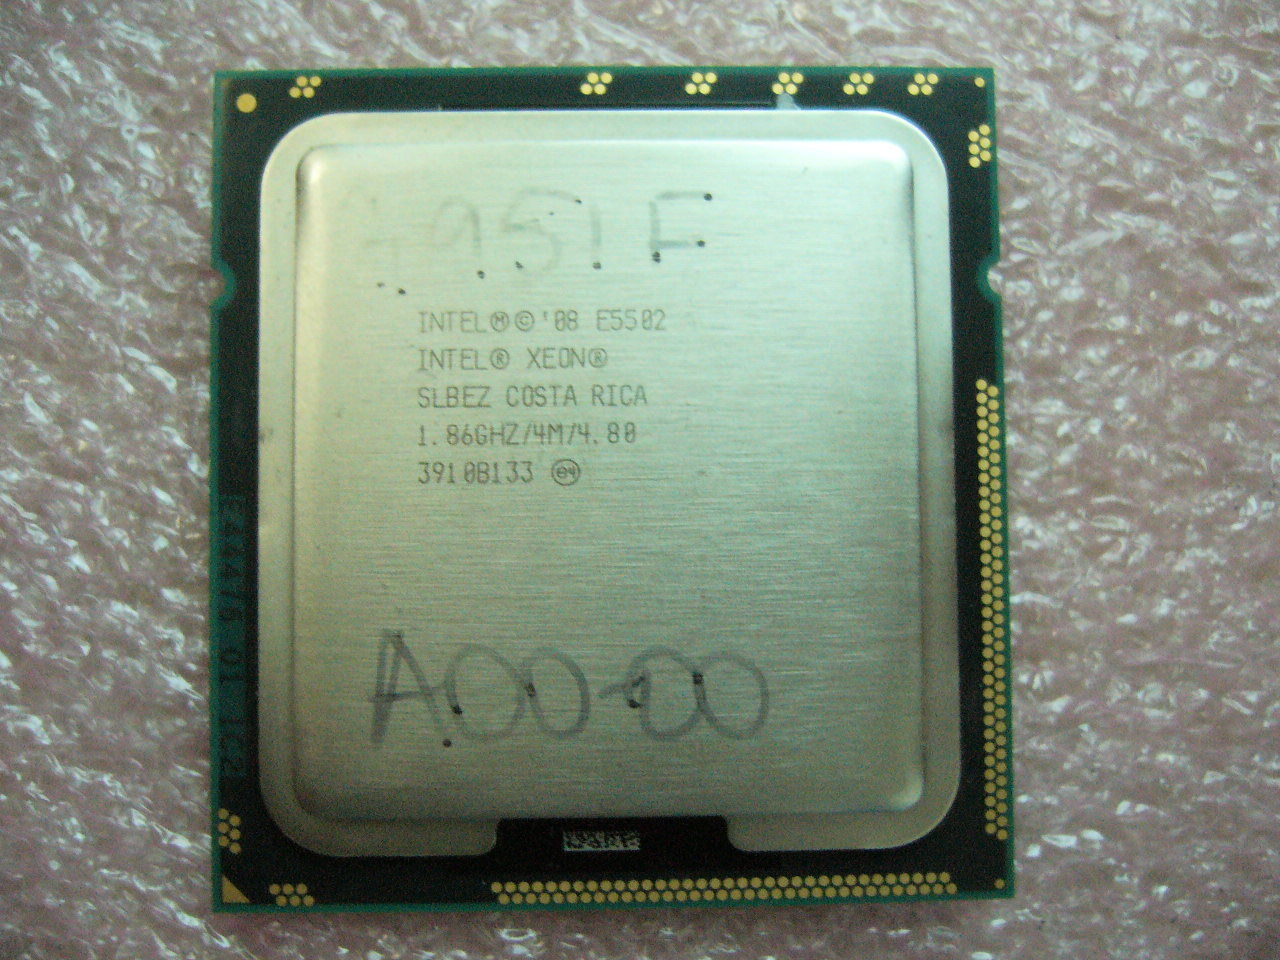 QTY 1x INTEL Dual-Cores CPU E5502 1.86GHZ/4MB 4.80T/s QPI LGA1366 SLBEZ - Click Image to Close